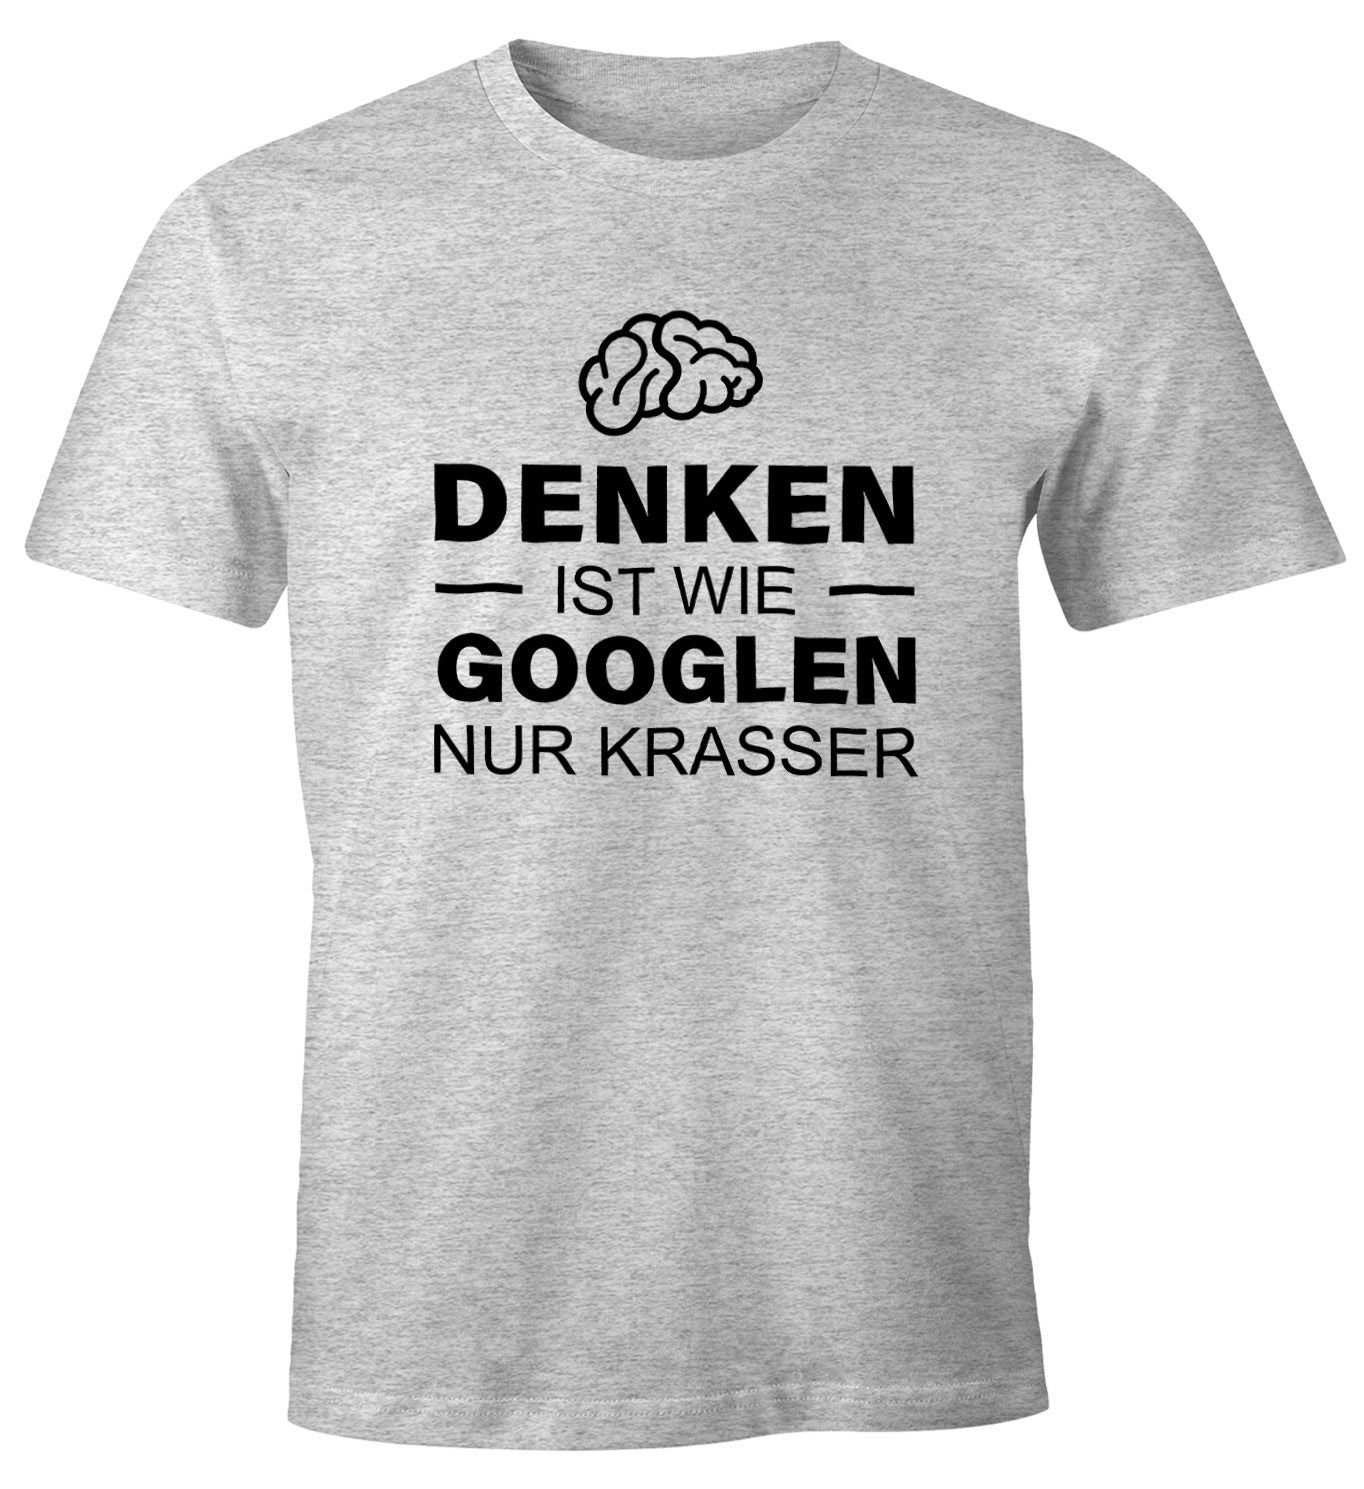 MoonWorks Print-Shirt Denken ist wie googeln nur krasser Herren T-Shirt Fun-Shirt Moonworks® mit Print grau